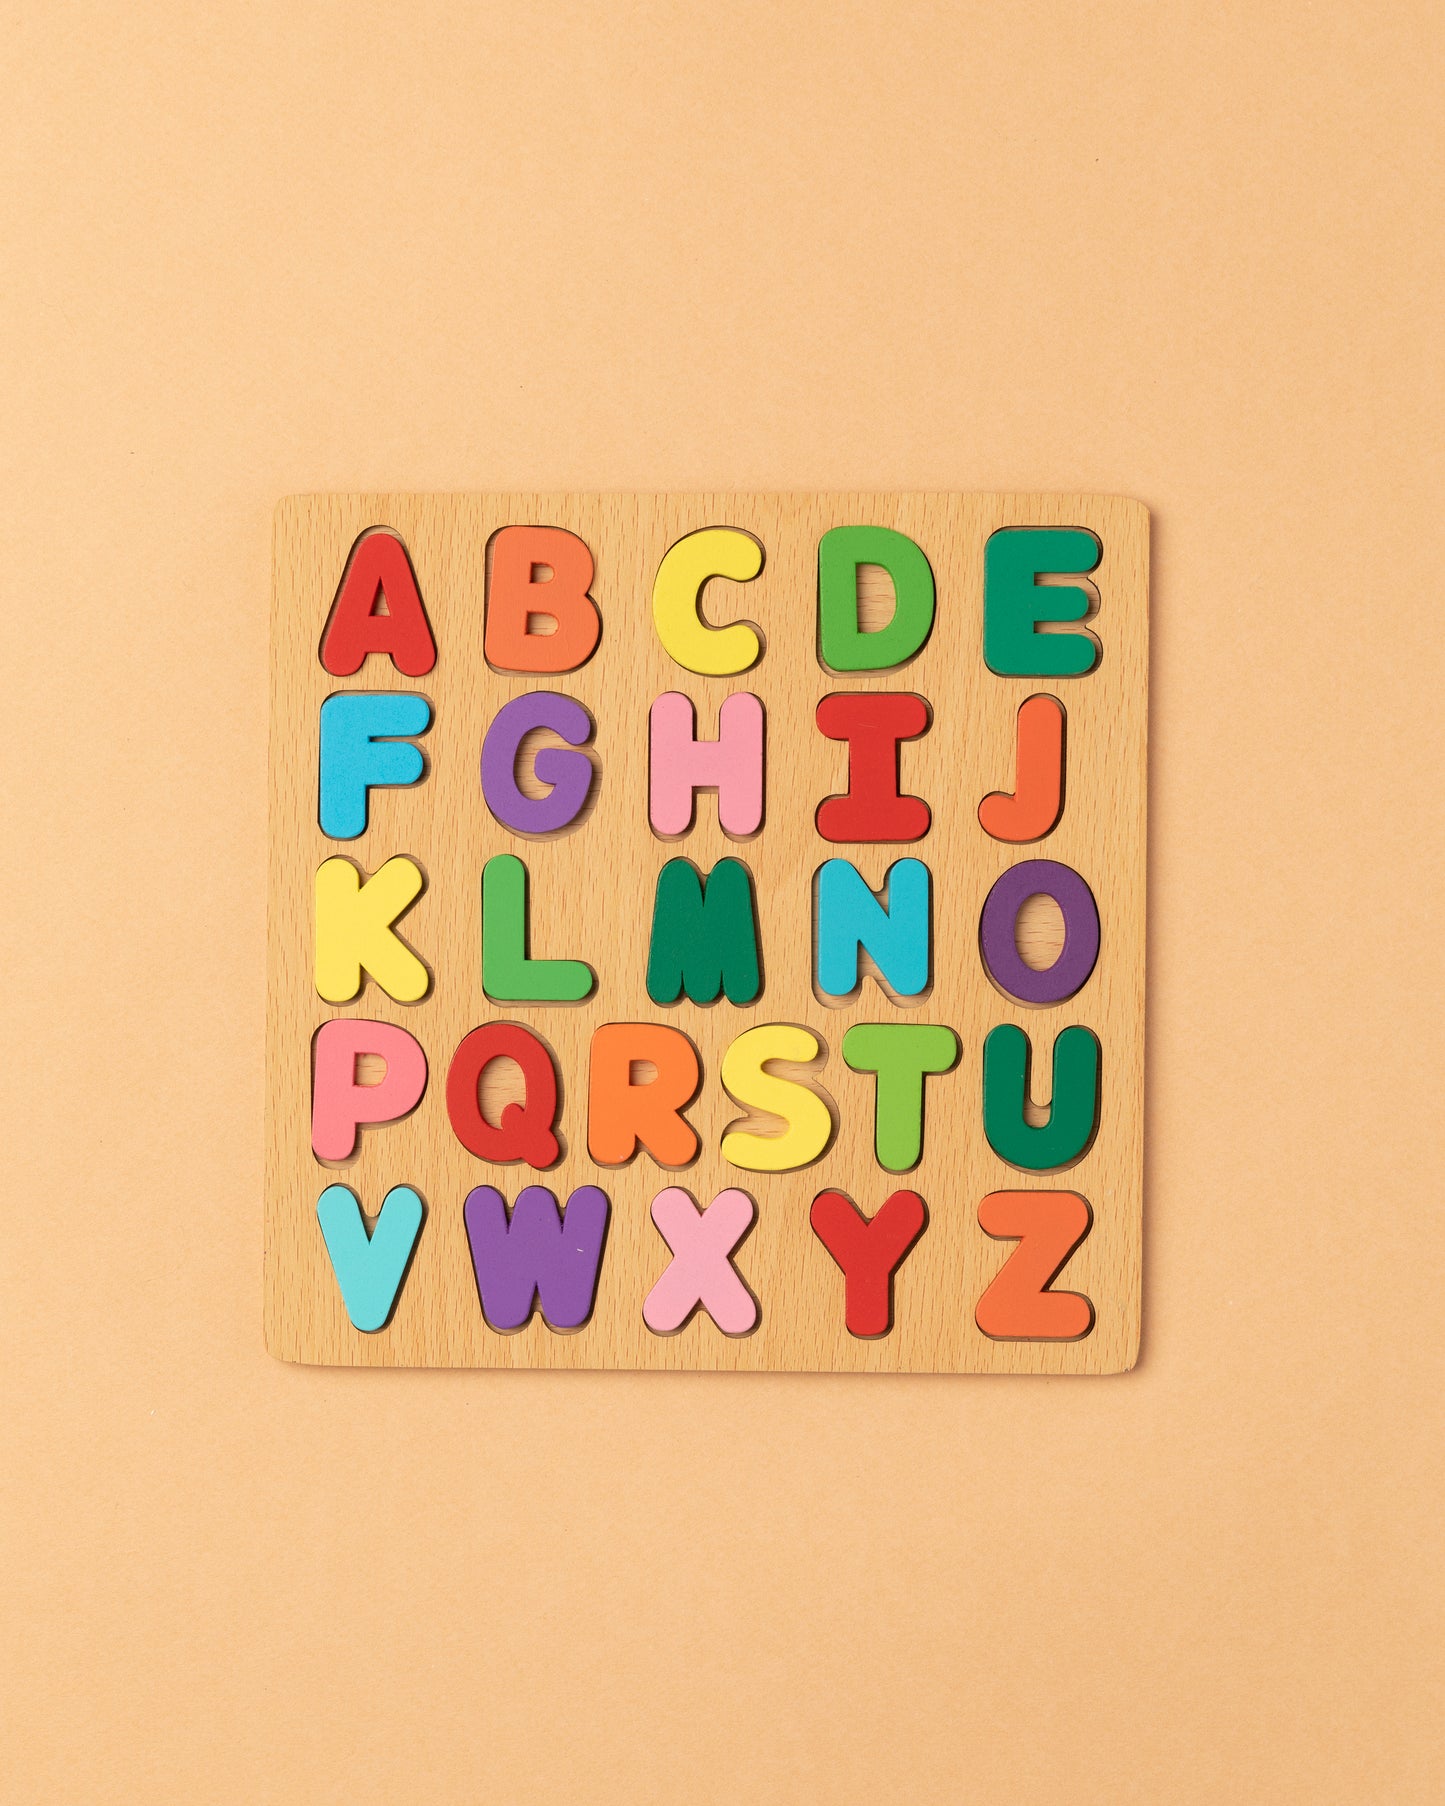 Wooden ABC Puzzle